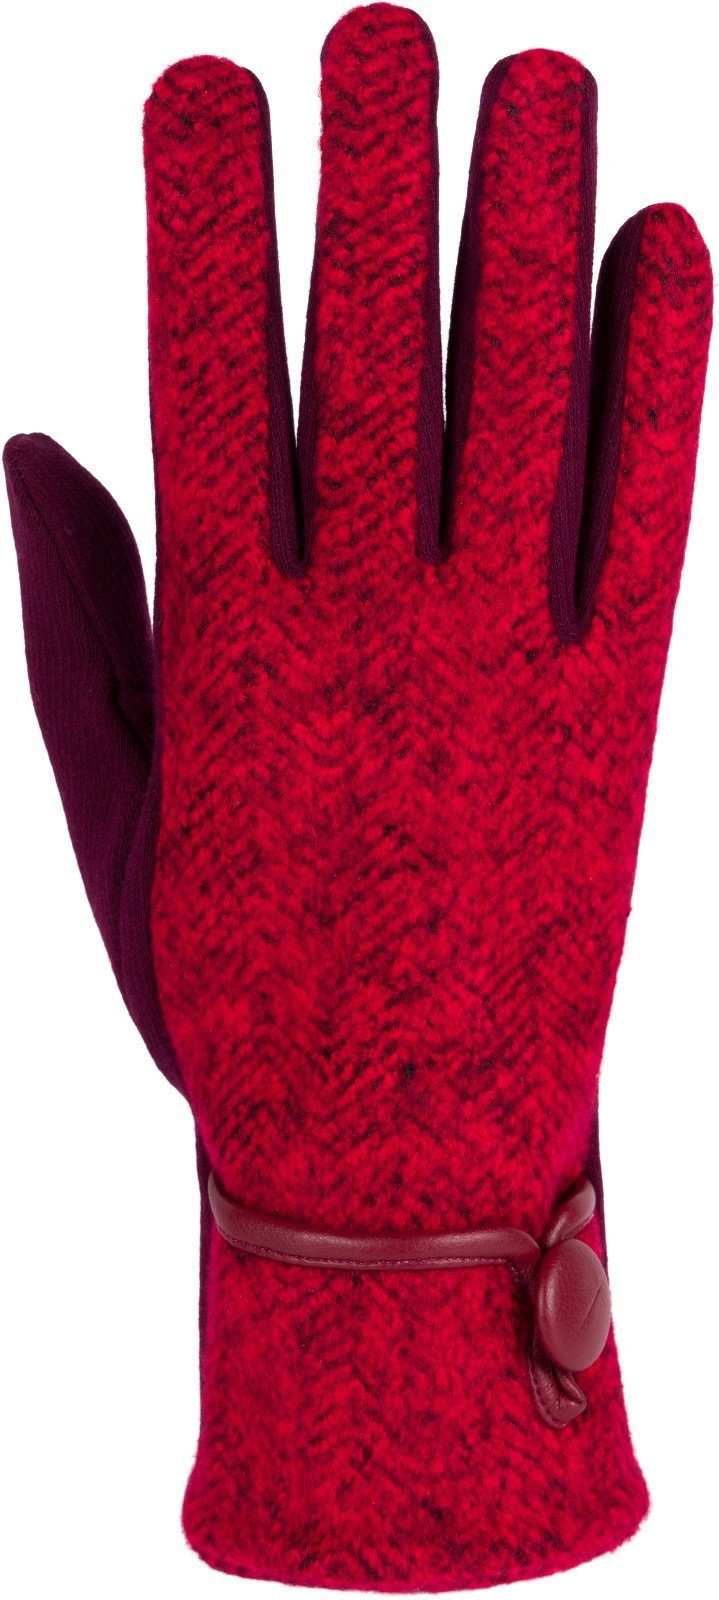 Handschuhe Bordeaux-Rot Fleecehandschuhe Fischgrät Muster Touchscreen styleBREAKER